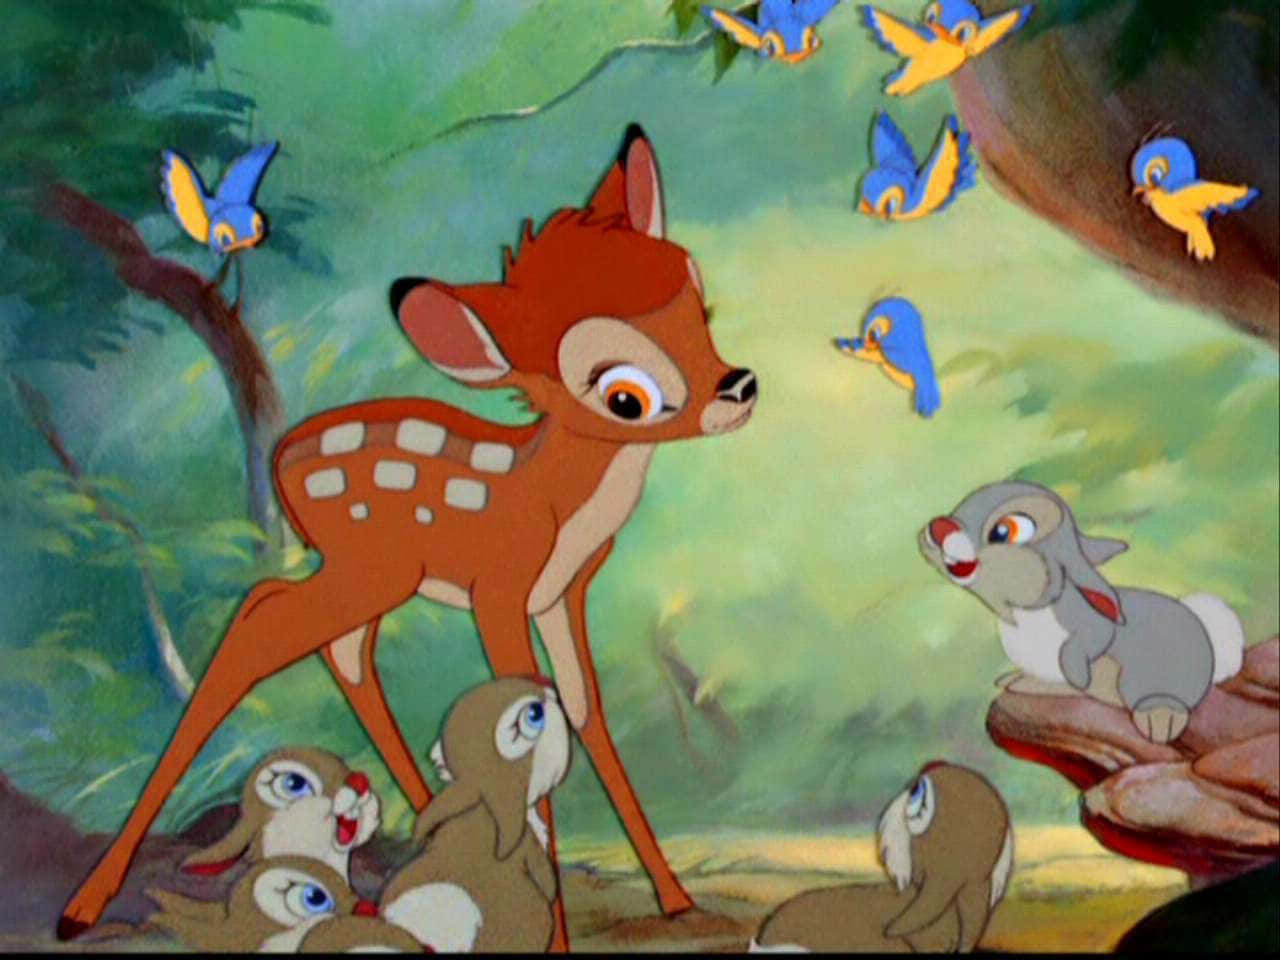 Bambiconoce Nuevos Amigos En El Pacífico Bosque.